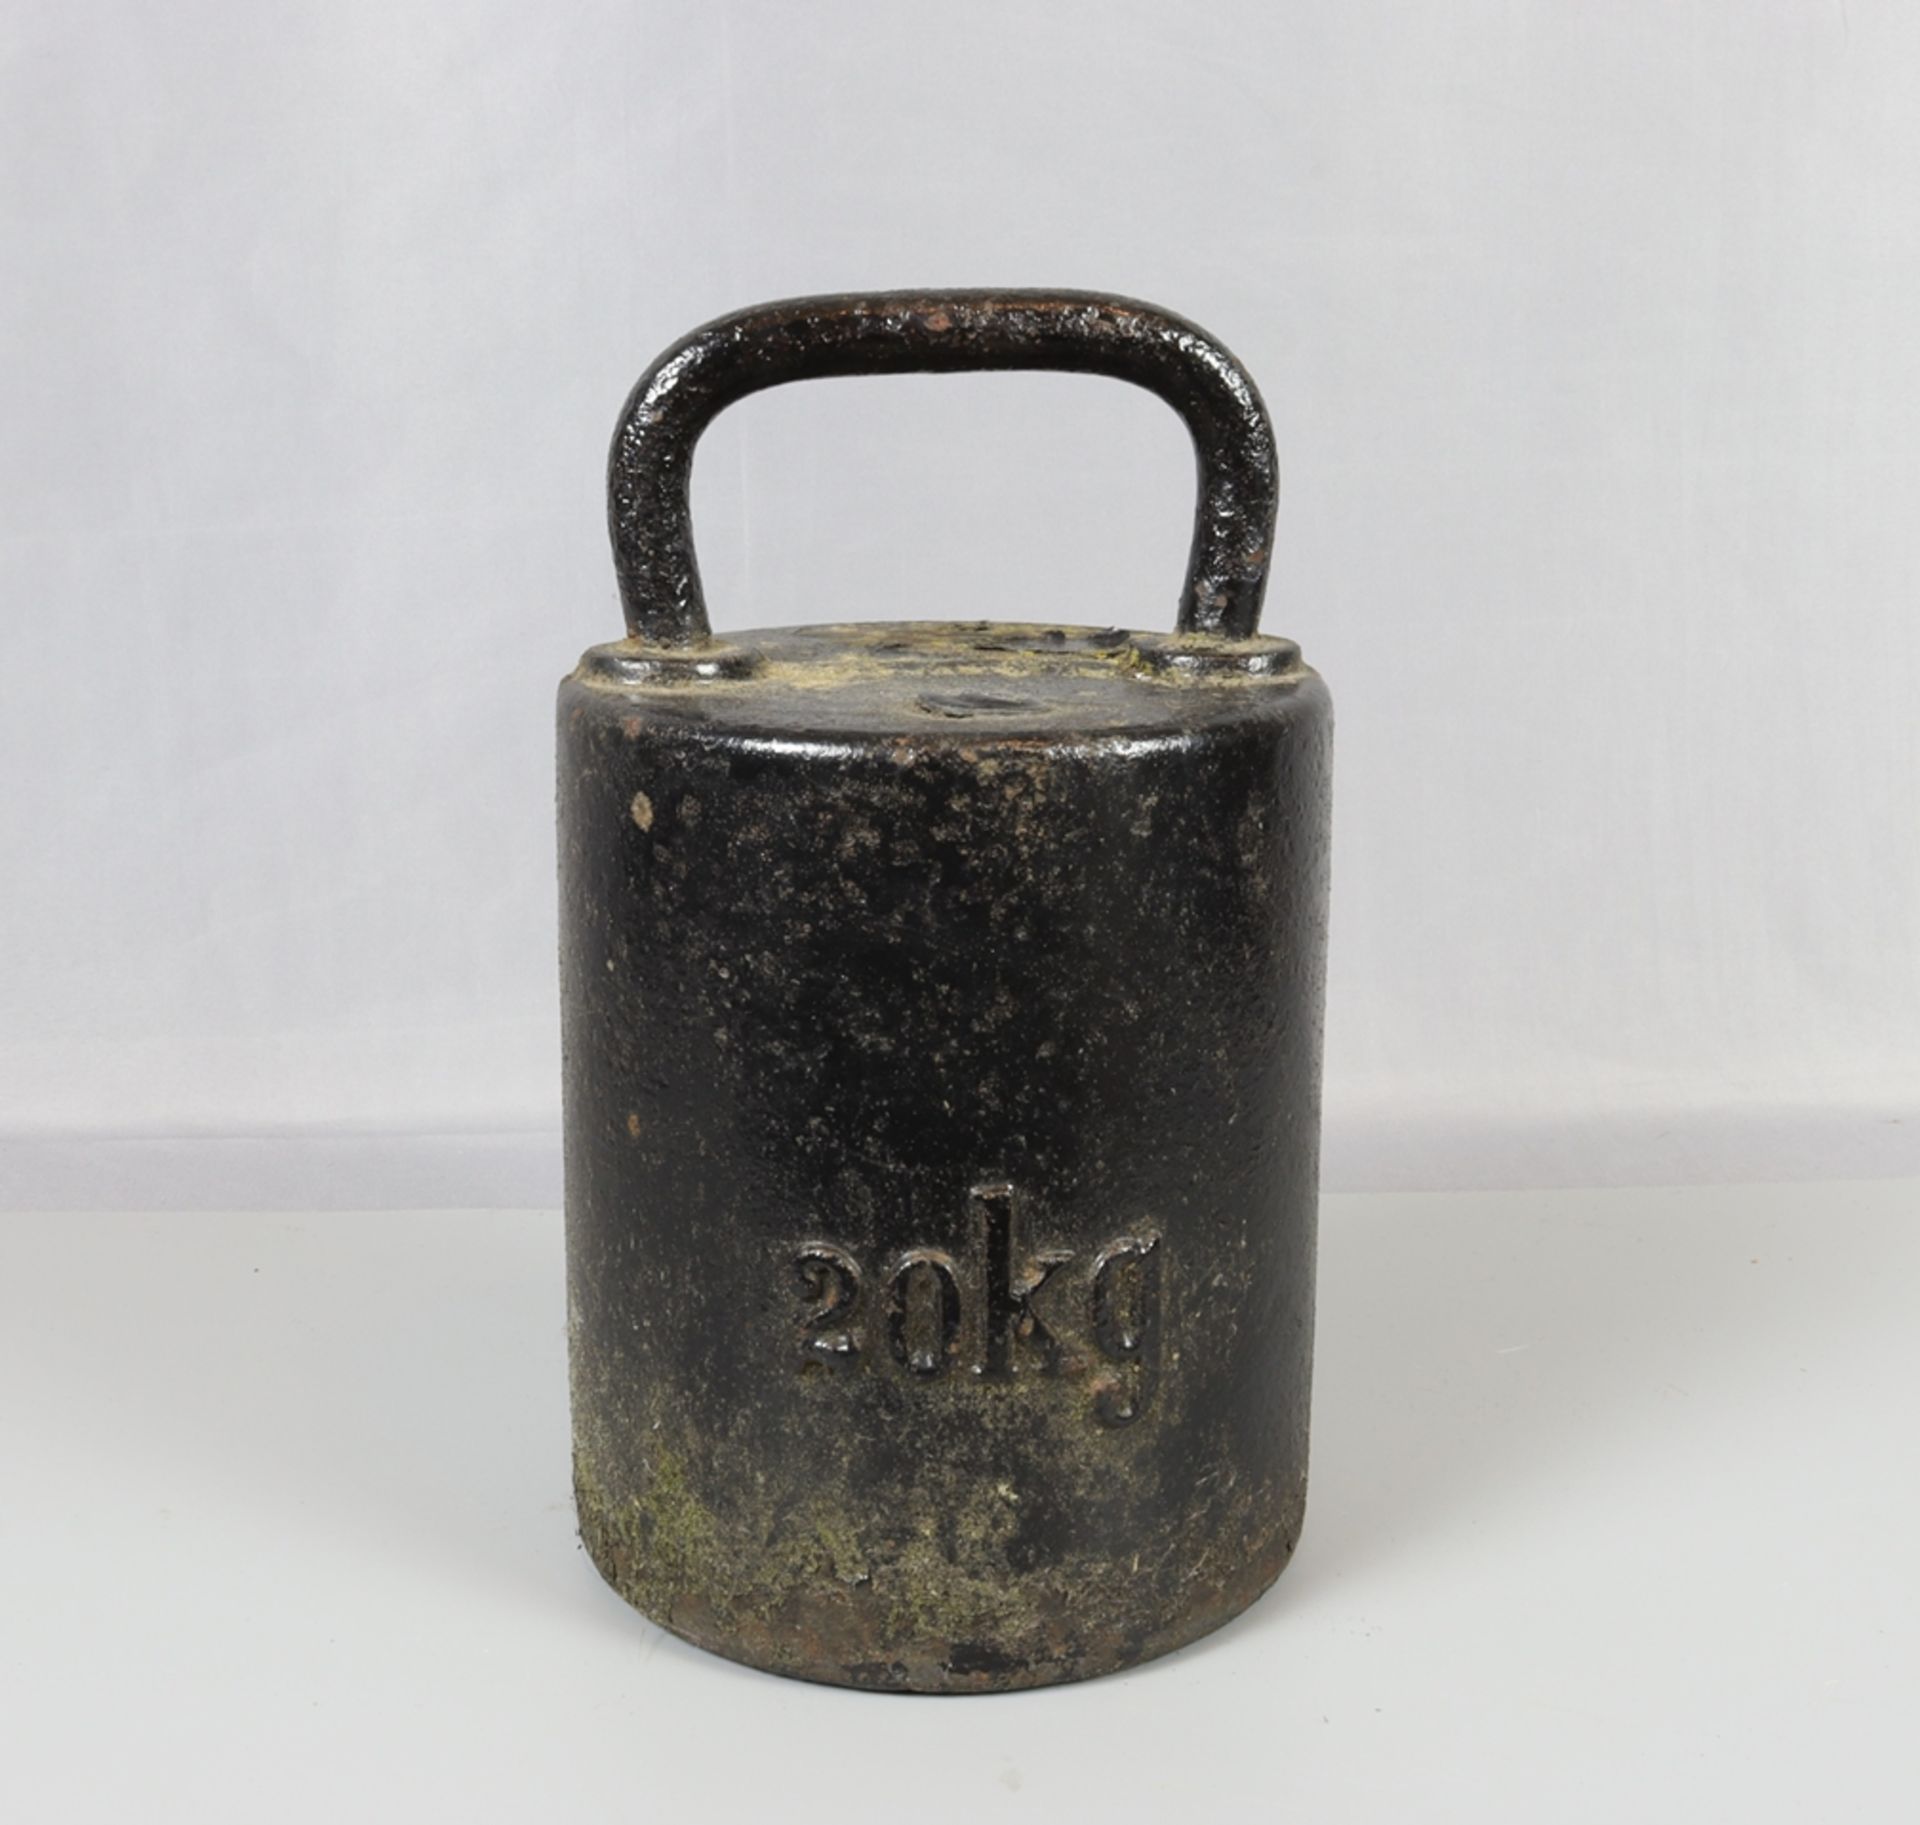 Standgewicht deutsch um 1900, 20kg Eisenguss, Zylinderform mit Handgriff, schwarz